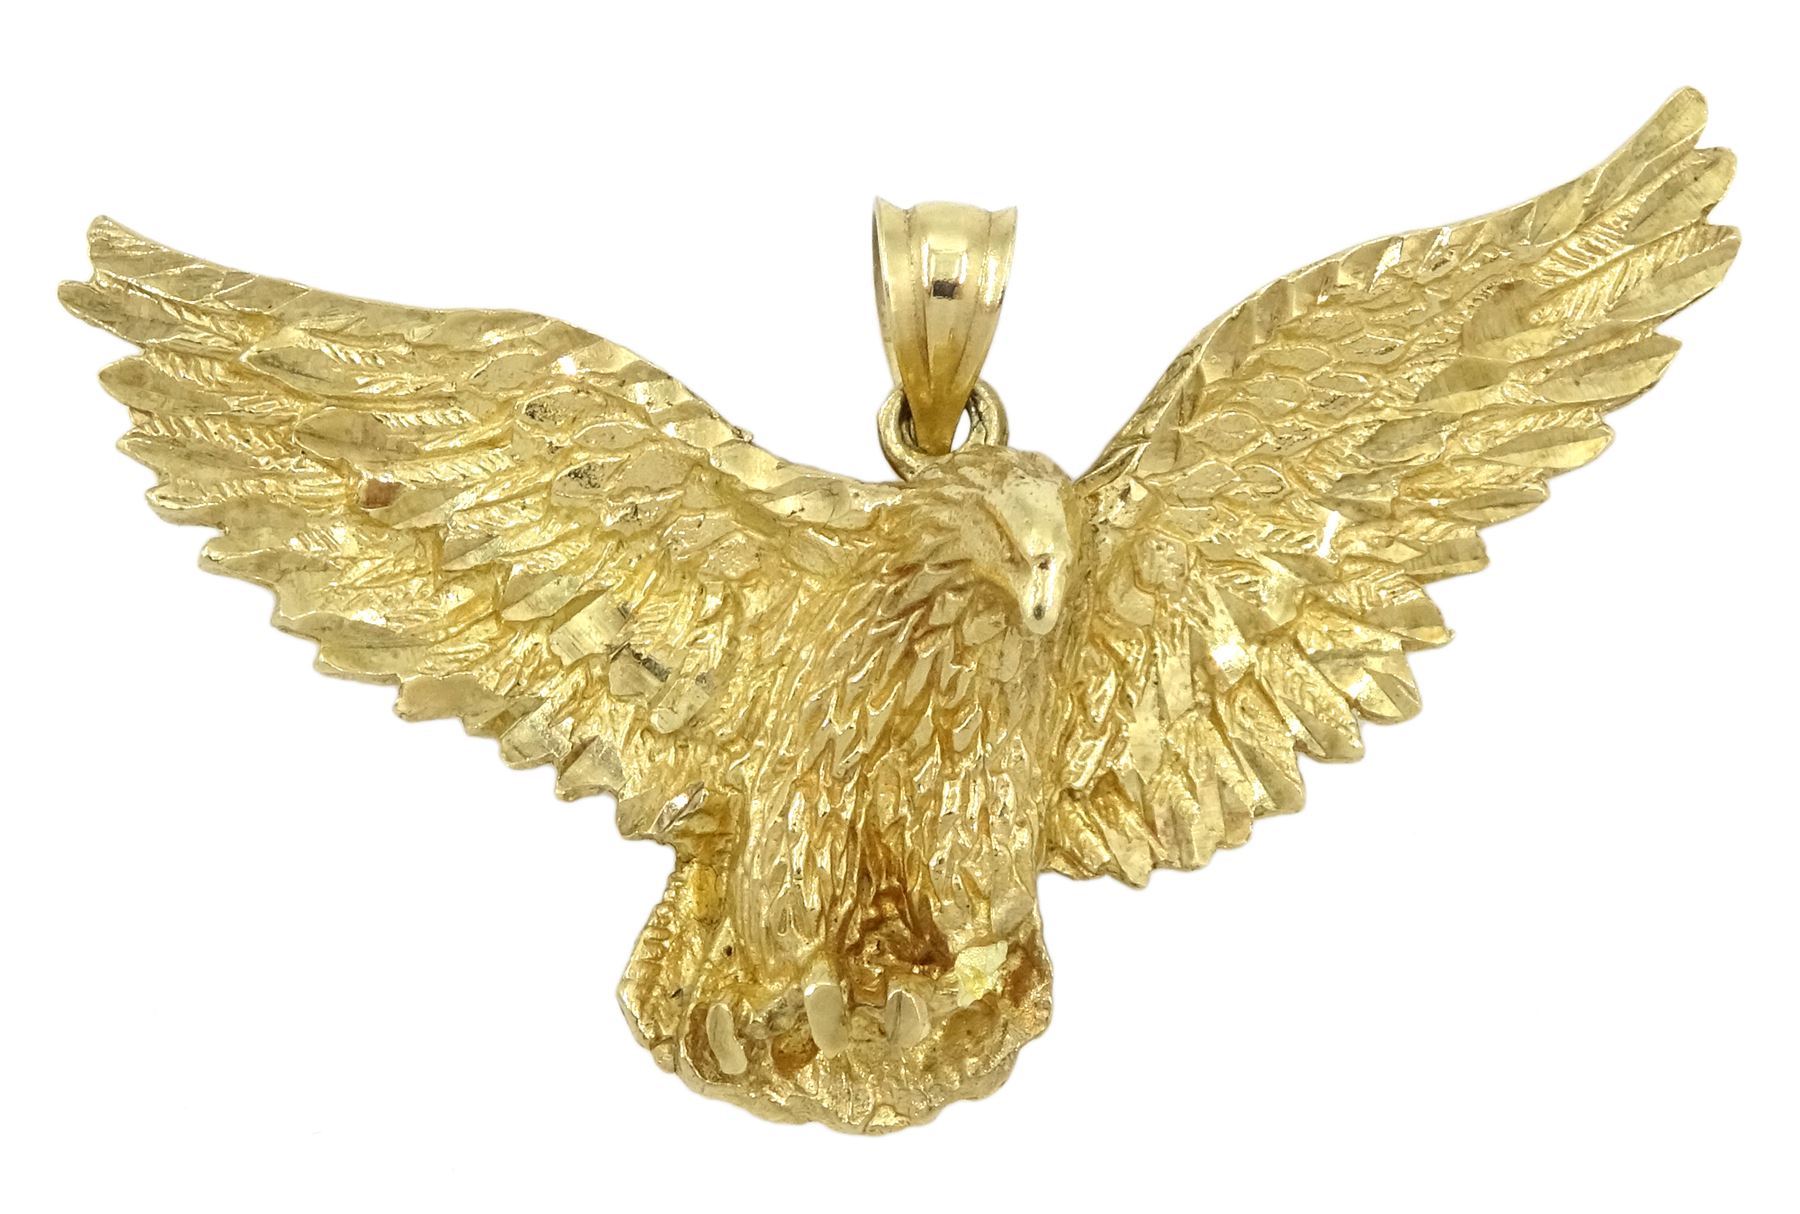 9ct gold eagle pendant